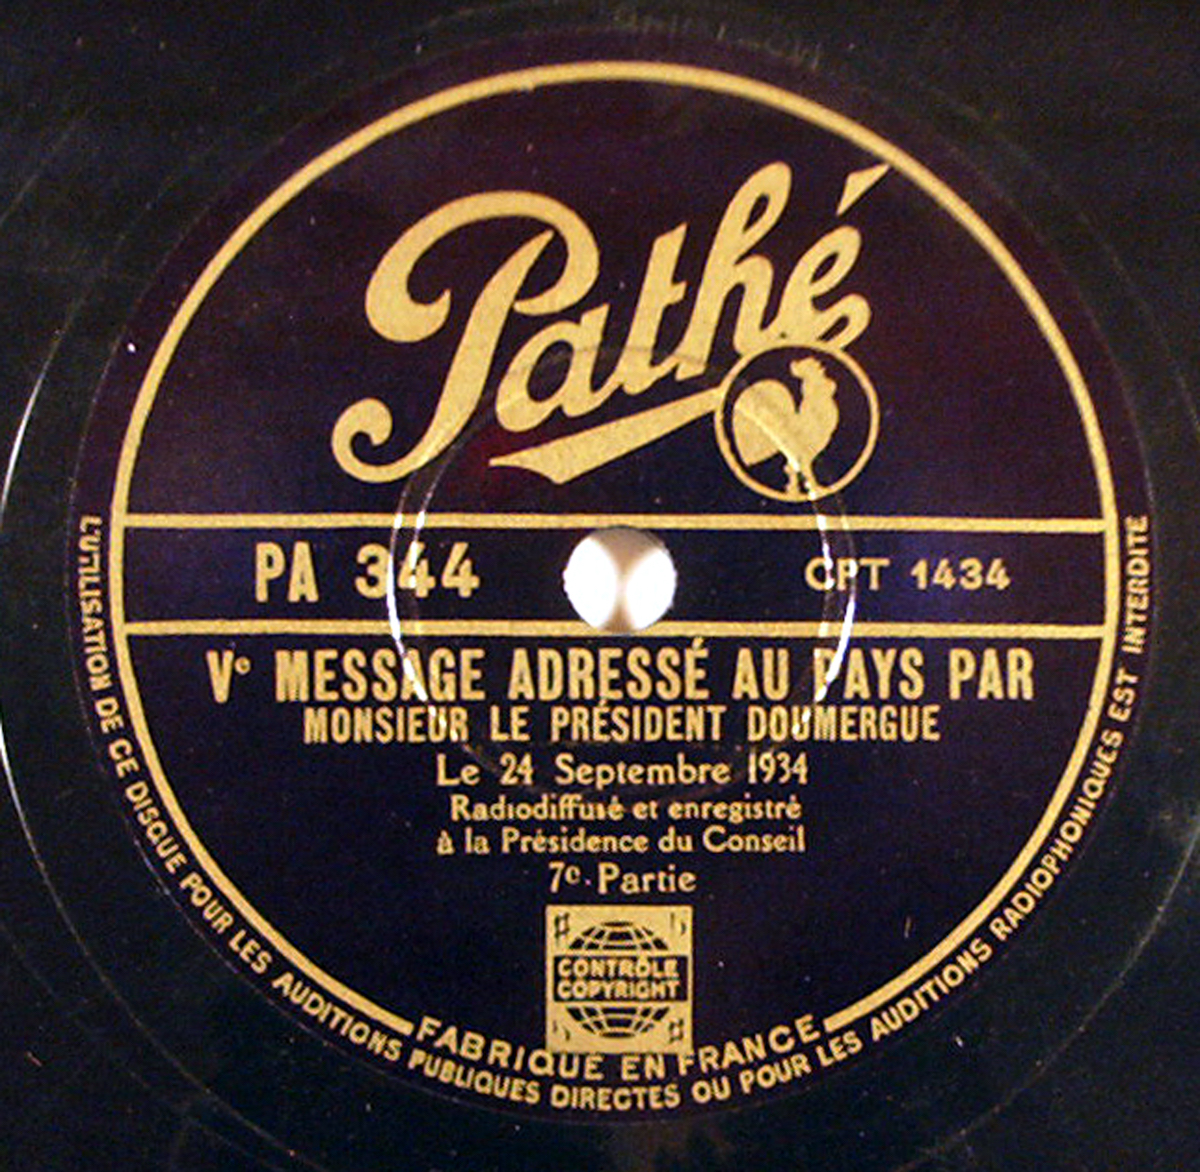 Publicité pour Changeur Automatique Pathé-Marconi, Février 1951